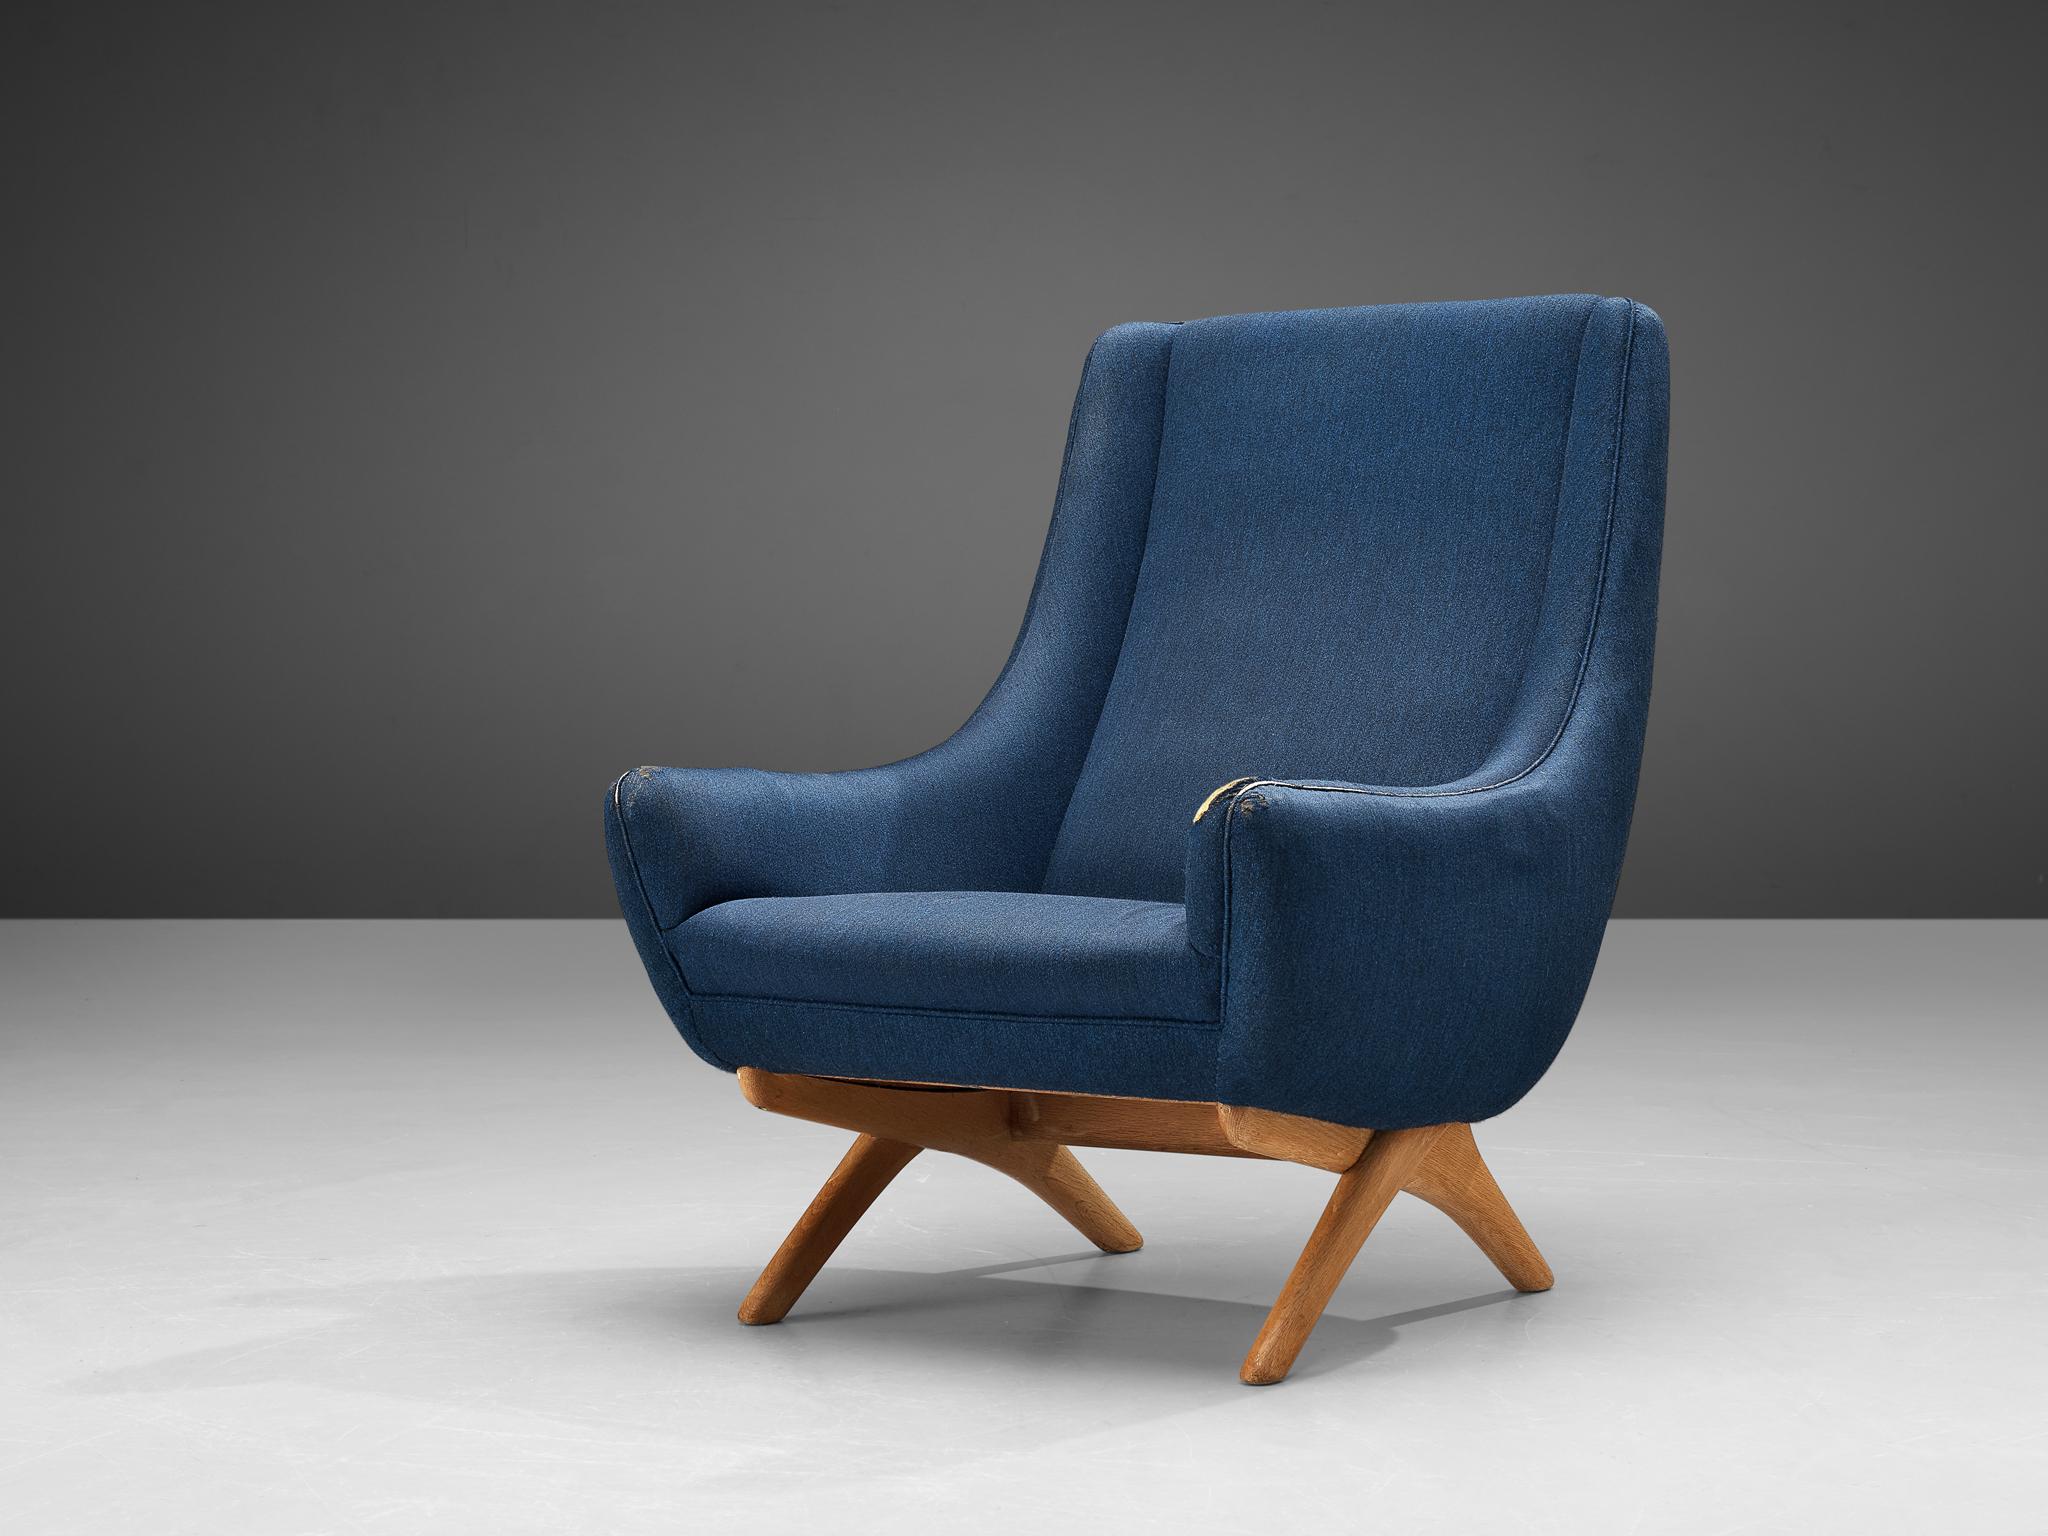 Illum Wikkelsø, Sessel, Eiche, Stoff, Dänemark, 1950er Jahre

Dieser gut gestaltete Sessel zeigt eine ungewöhnliche Eleganz und viel Liebe zum Detail, kombiniert mit hervorragender Handwerkskunst, die für die Arbeit von Illum Wikkelsø